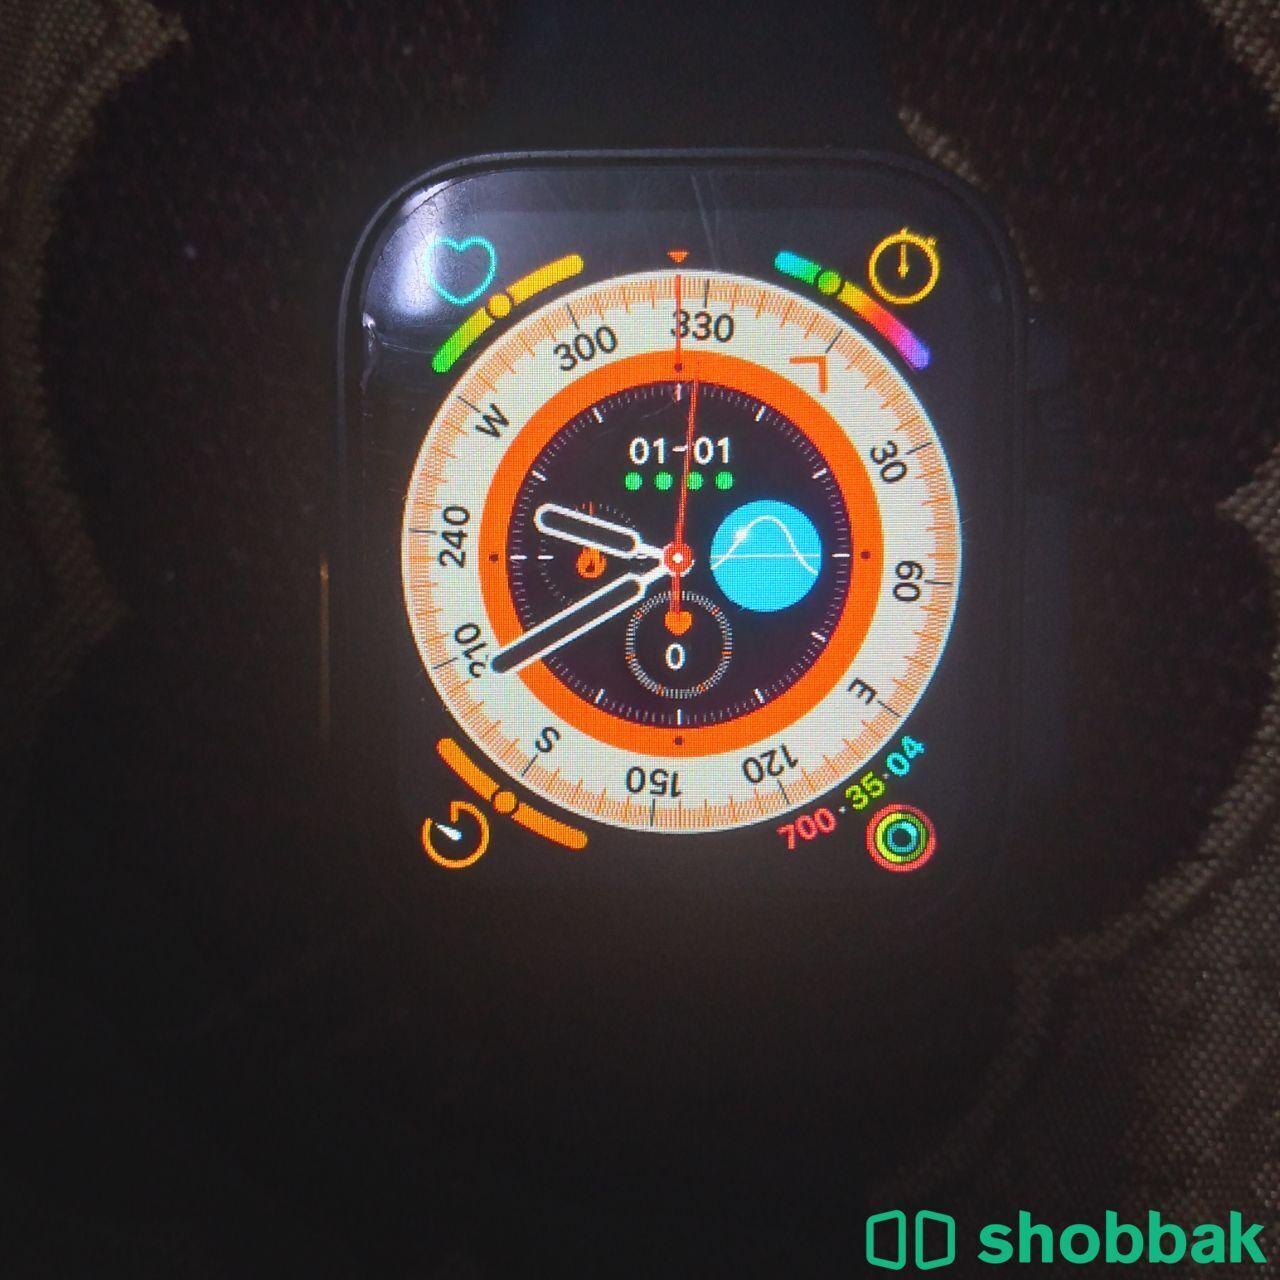 Smart watch Shobbak Saudi Arabia